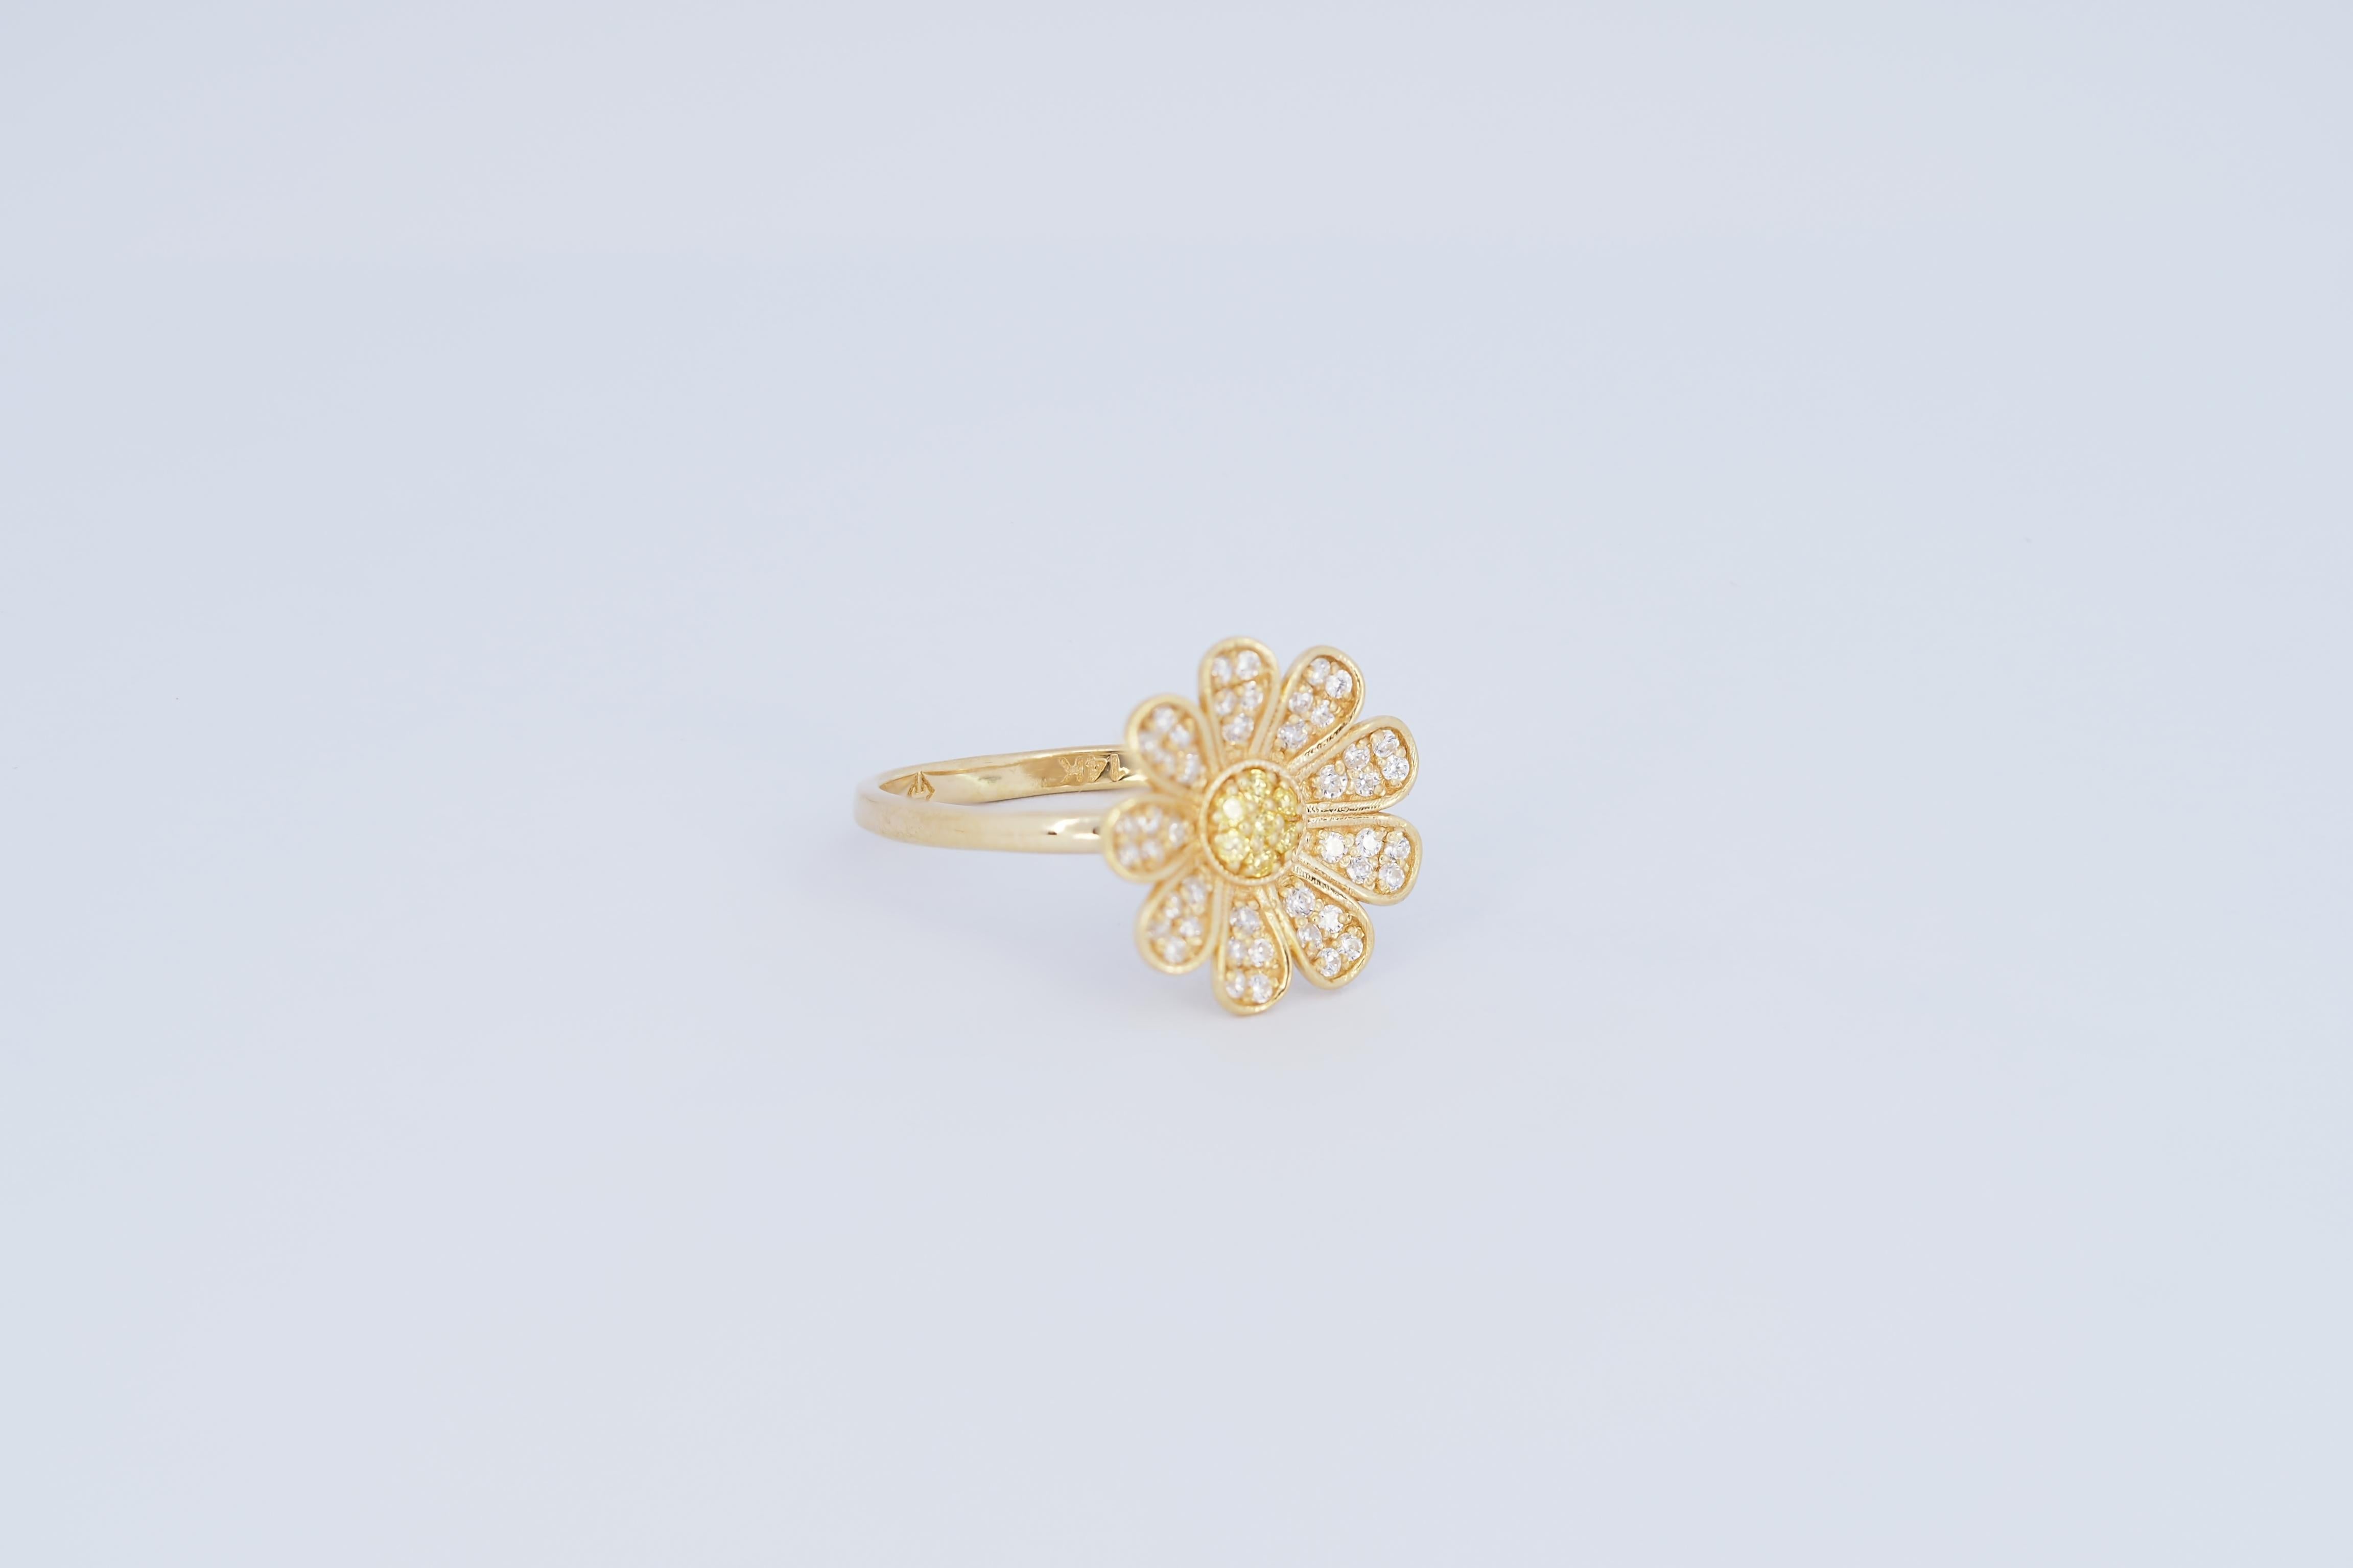 For Sale:  Daisy flower 14k gold ring.  11